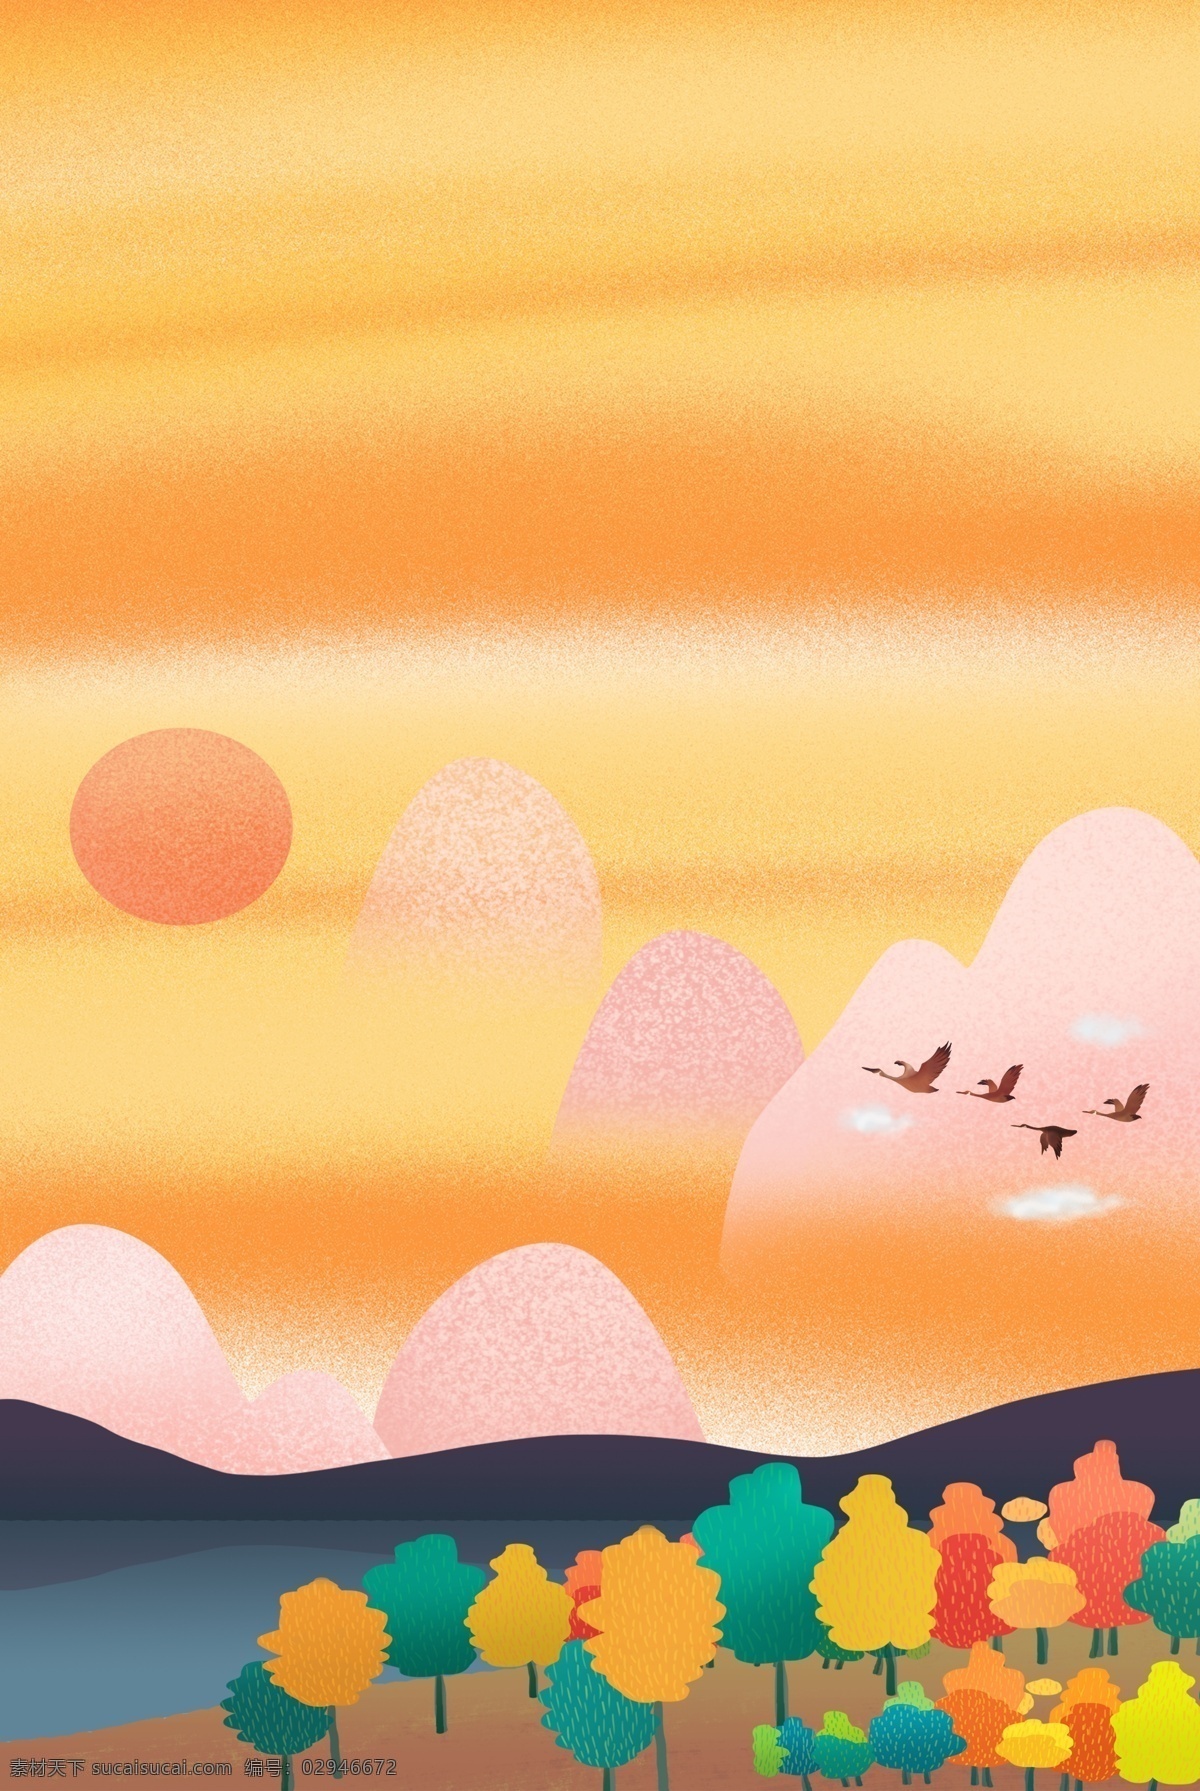 创意 简约 山水 自然风景 合成 天空 夕阳 大雁 花草 卡通